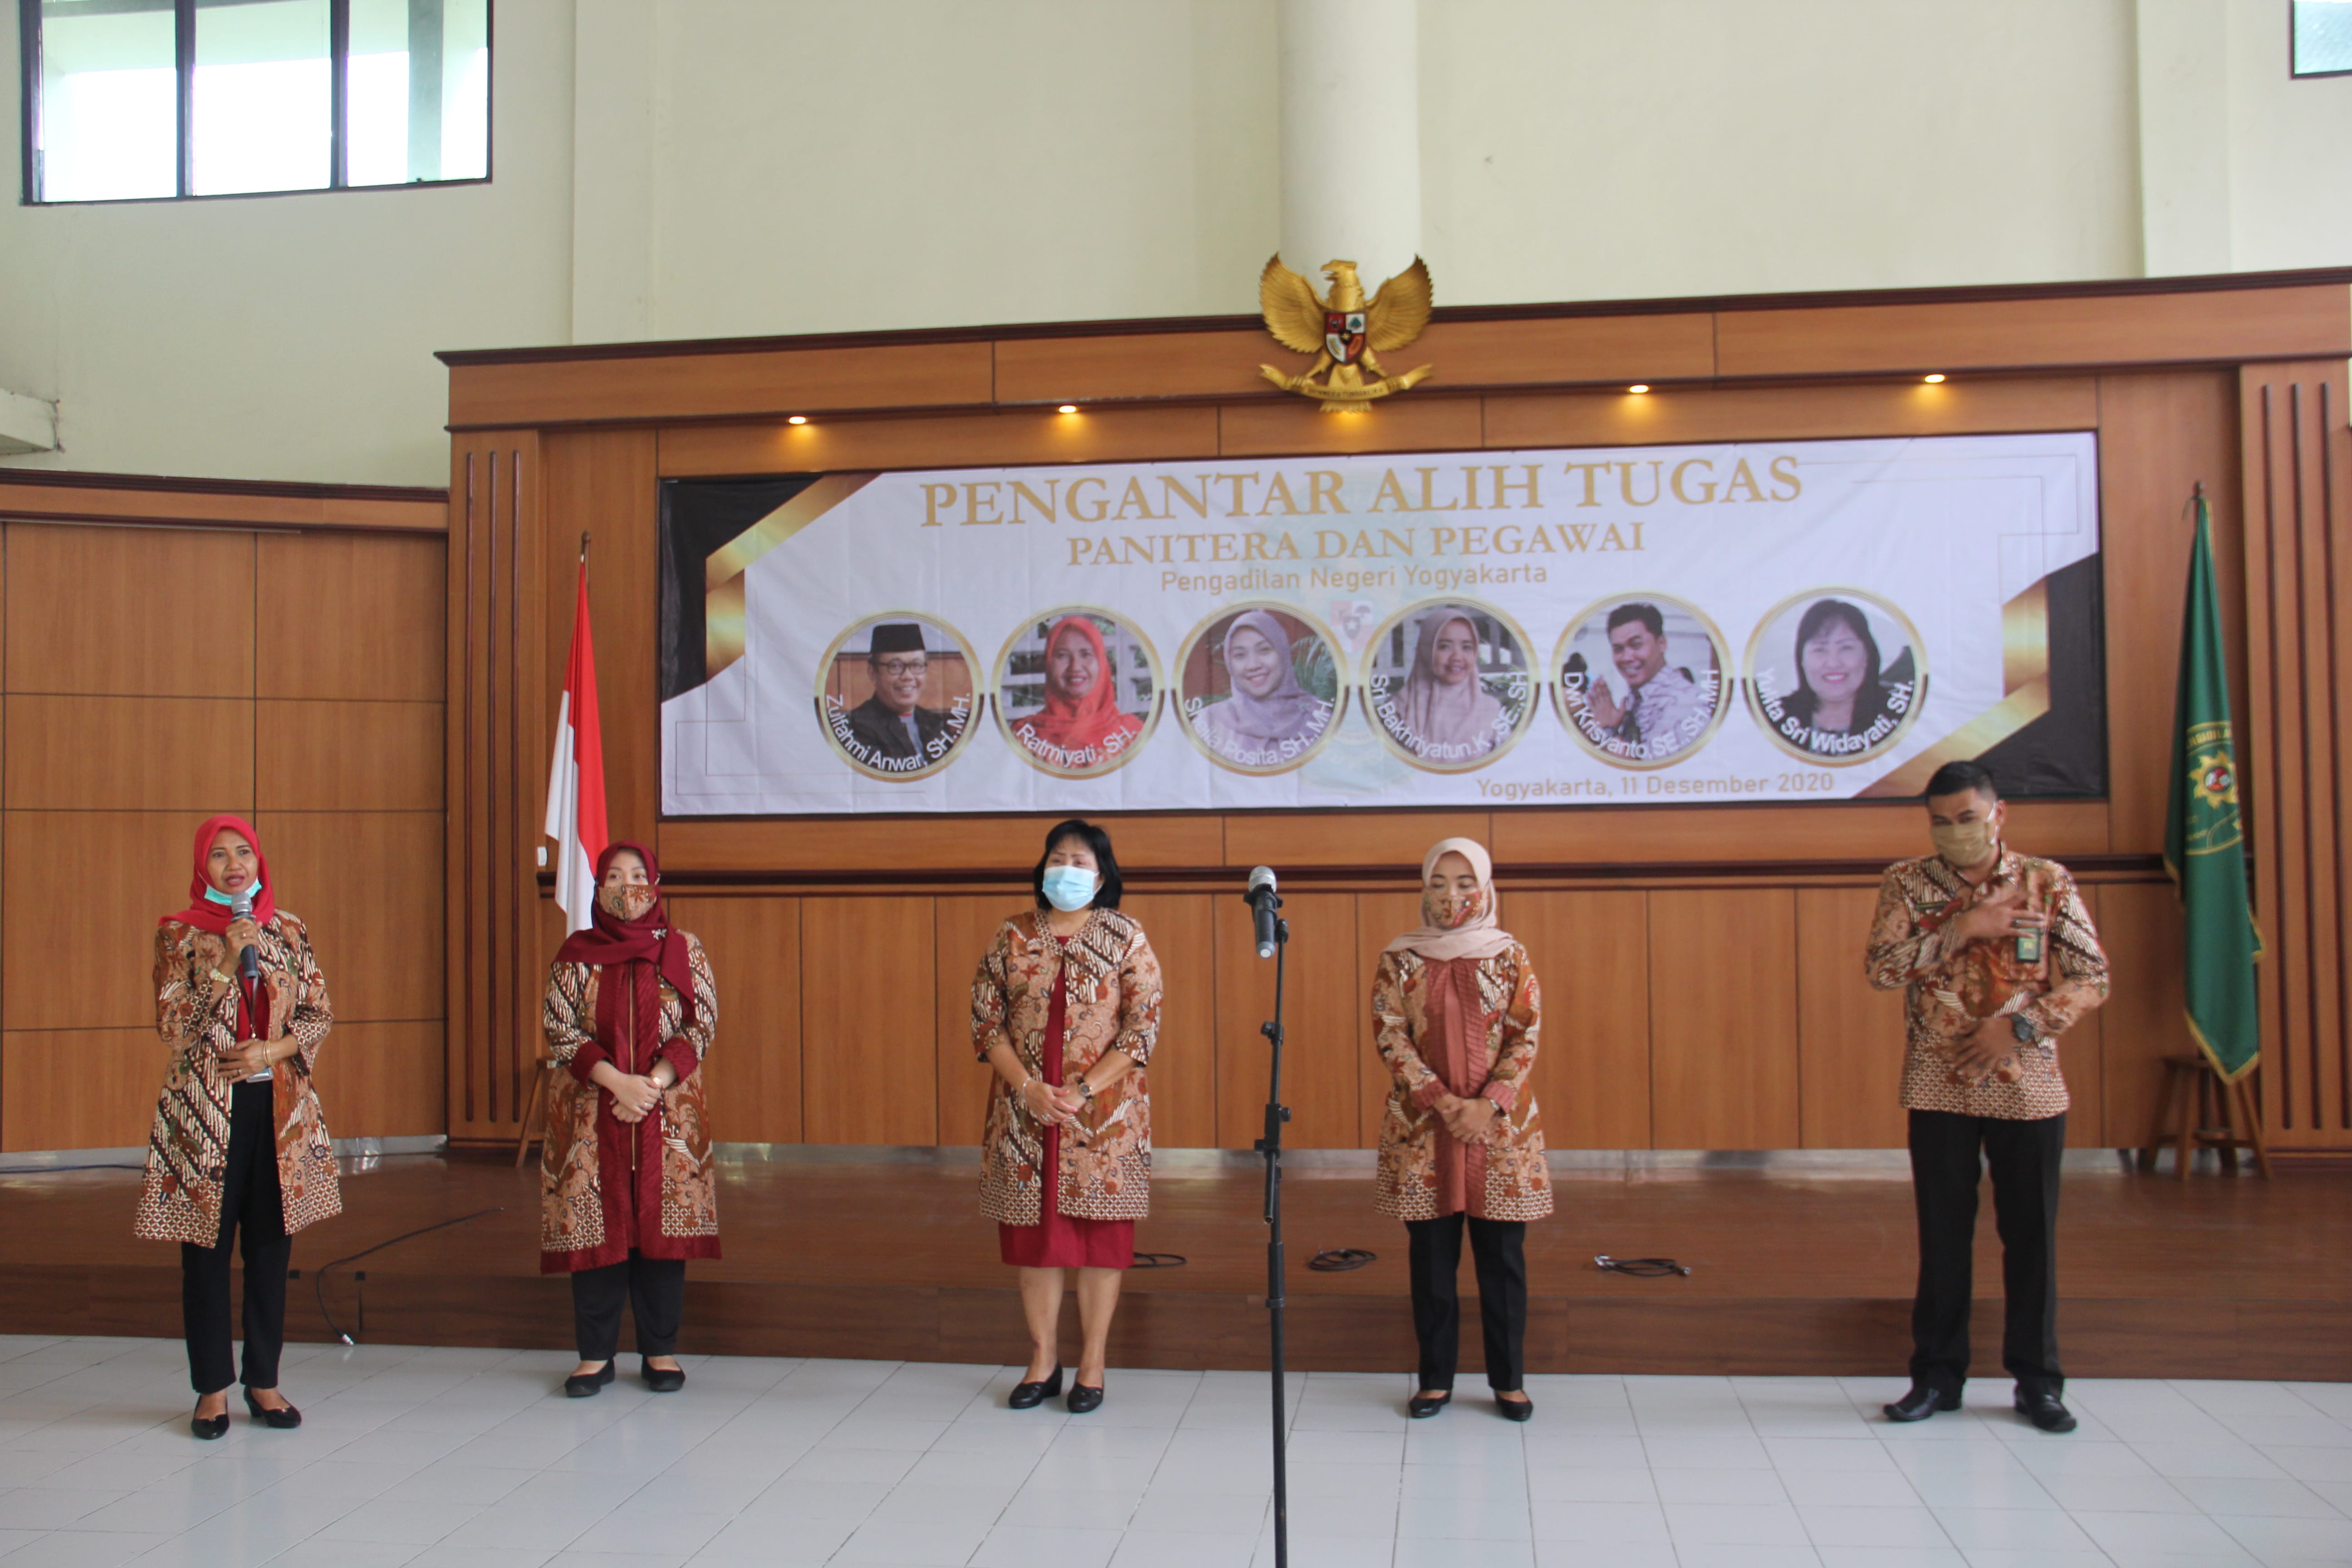 Pengantar Alih Tugas Panitera dan Pegawai Pengadilan Negeri Yogyakarta